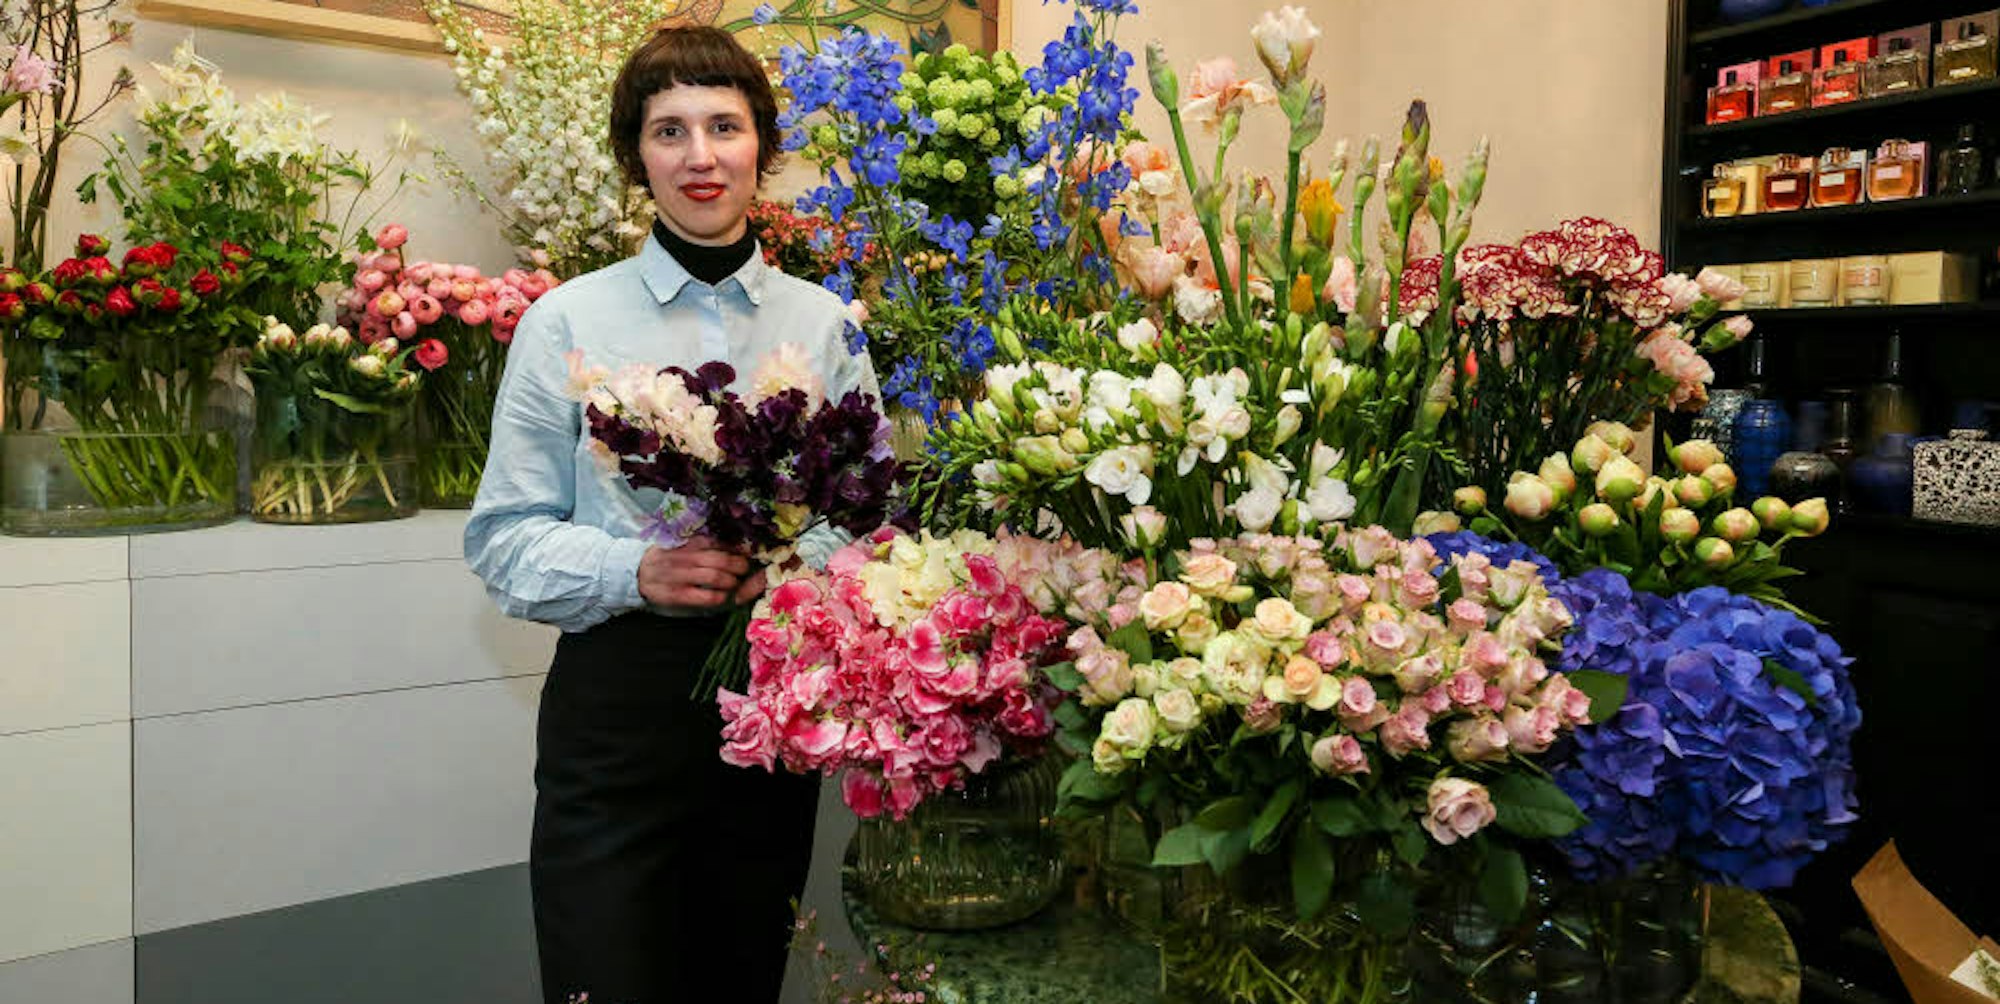 Erfolgreiche Quereinsteigerin: Isabelle Niehsen in ihrem charmanten kleinen Geschäft am Rathenauplatz. Nicht alltägliche Farben, Sorten und Arrangements zeichnen ihr „Floral Design“ aus.